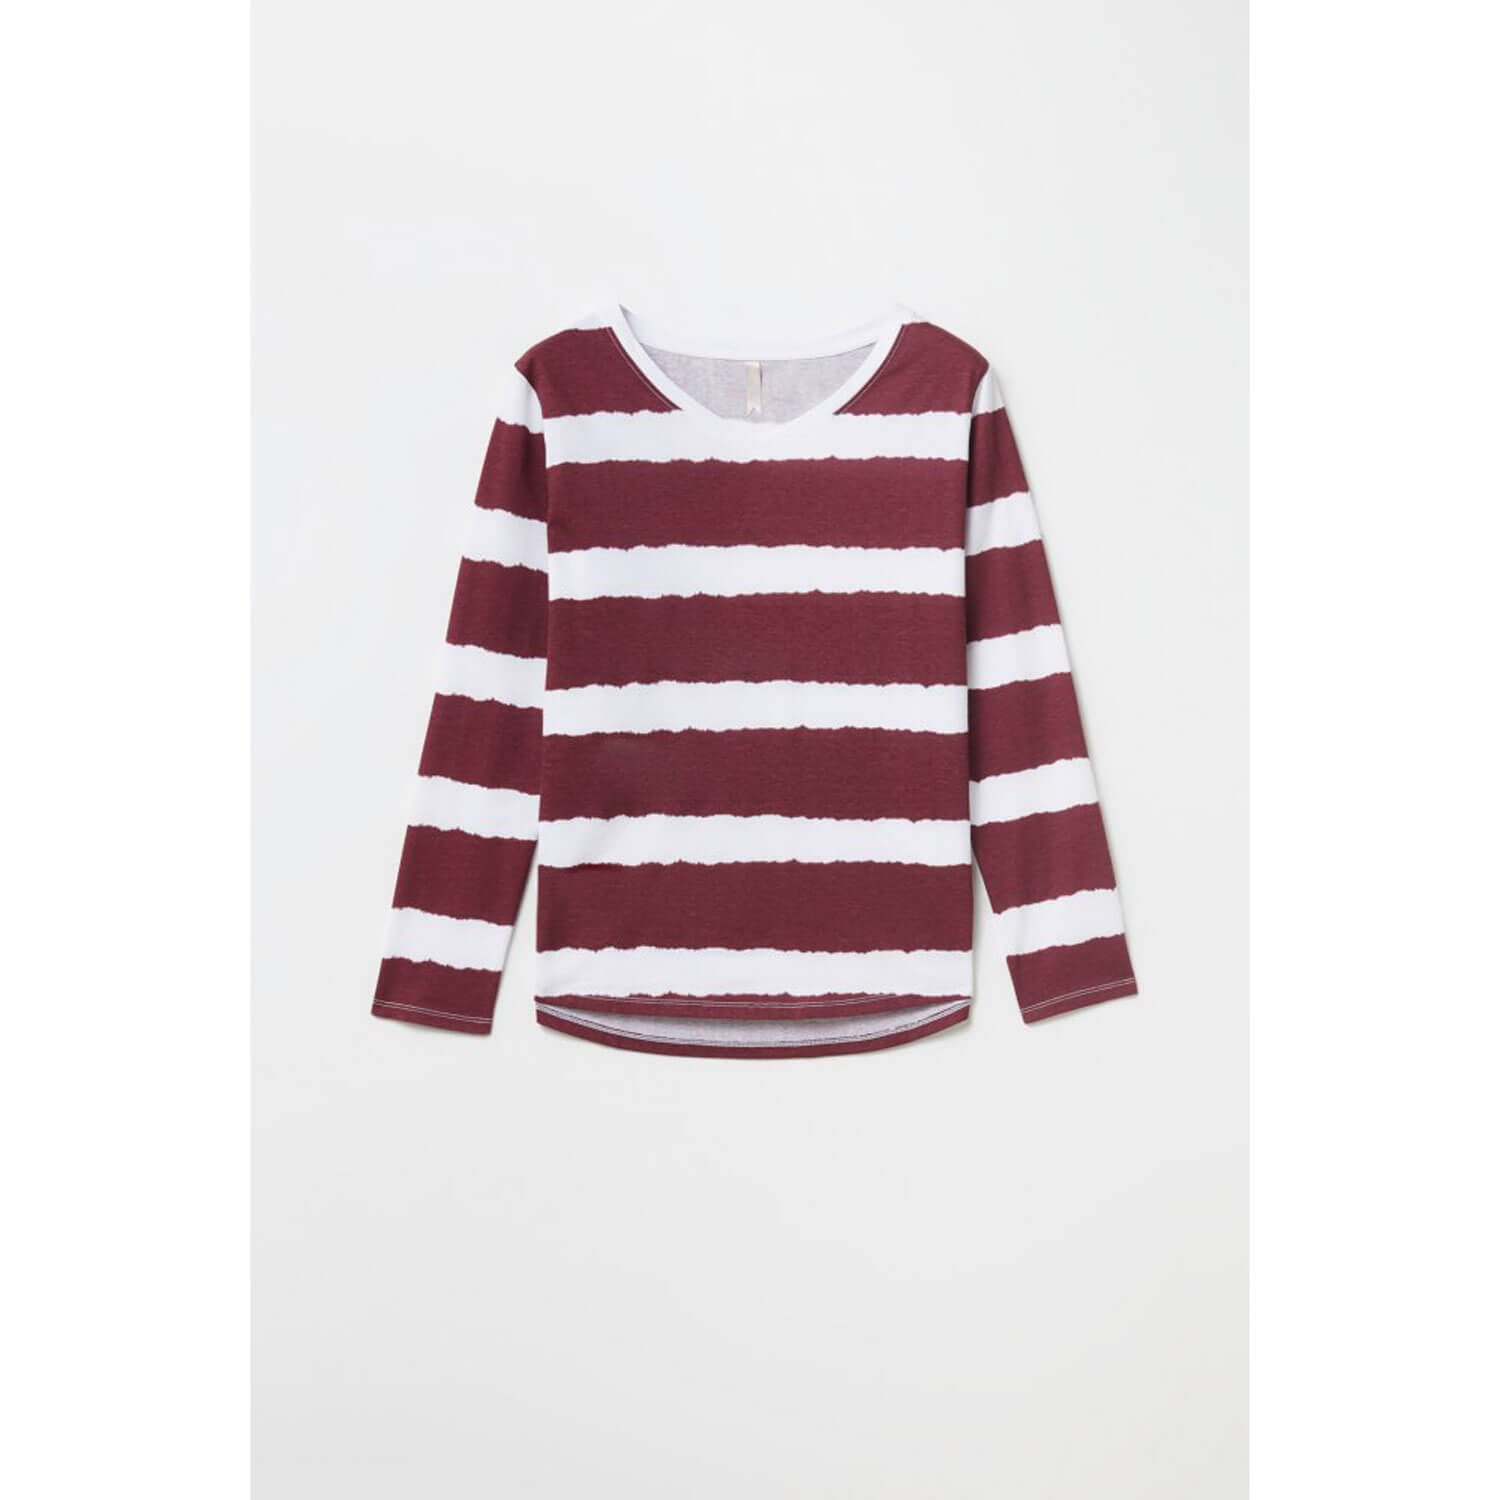 Sfera Striped Tye-Dye T-Shirt - Wine 1 Shaws Department Stores